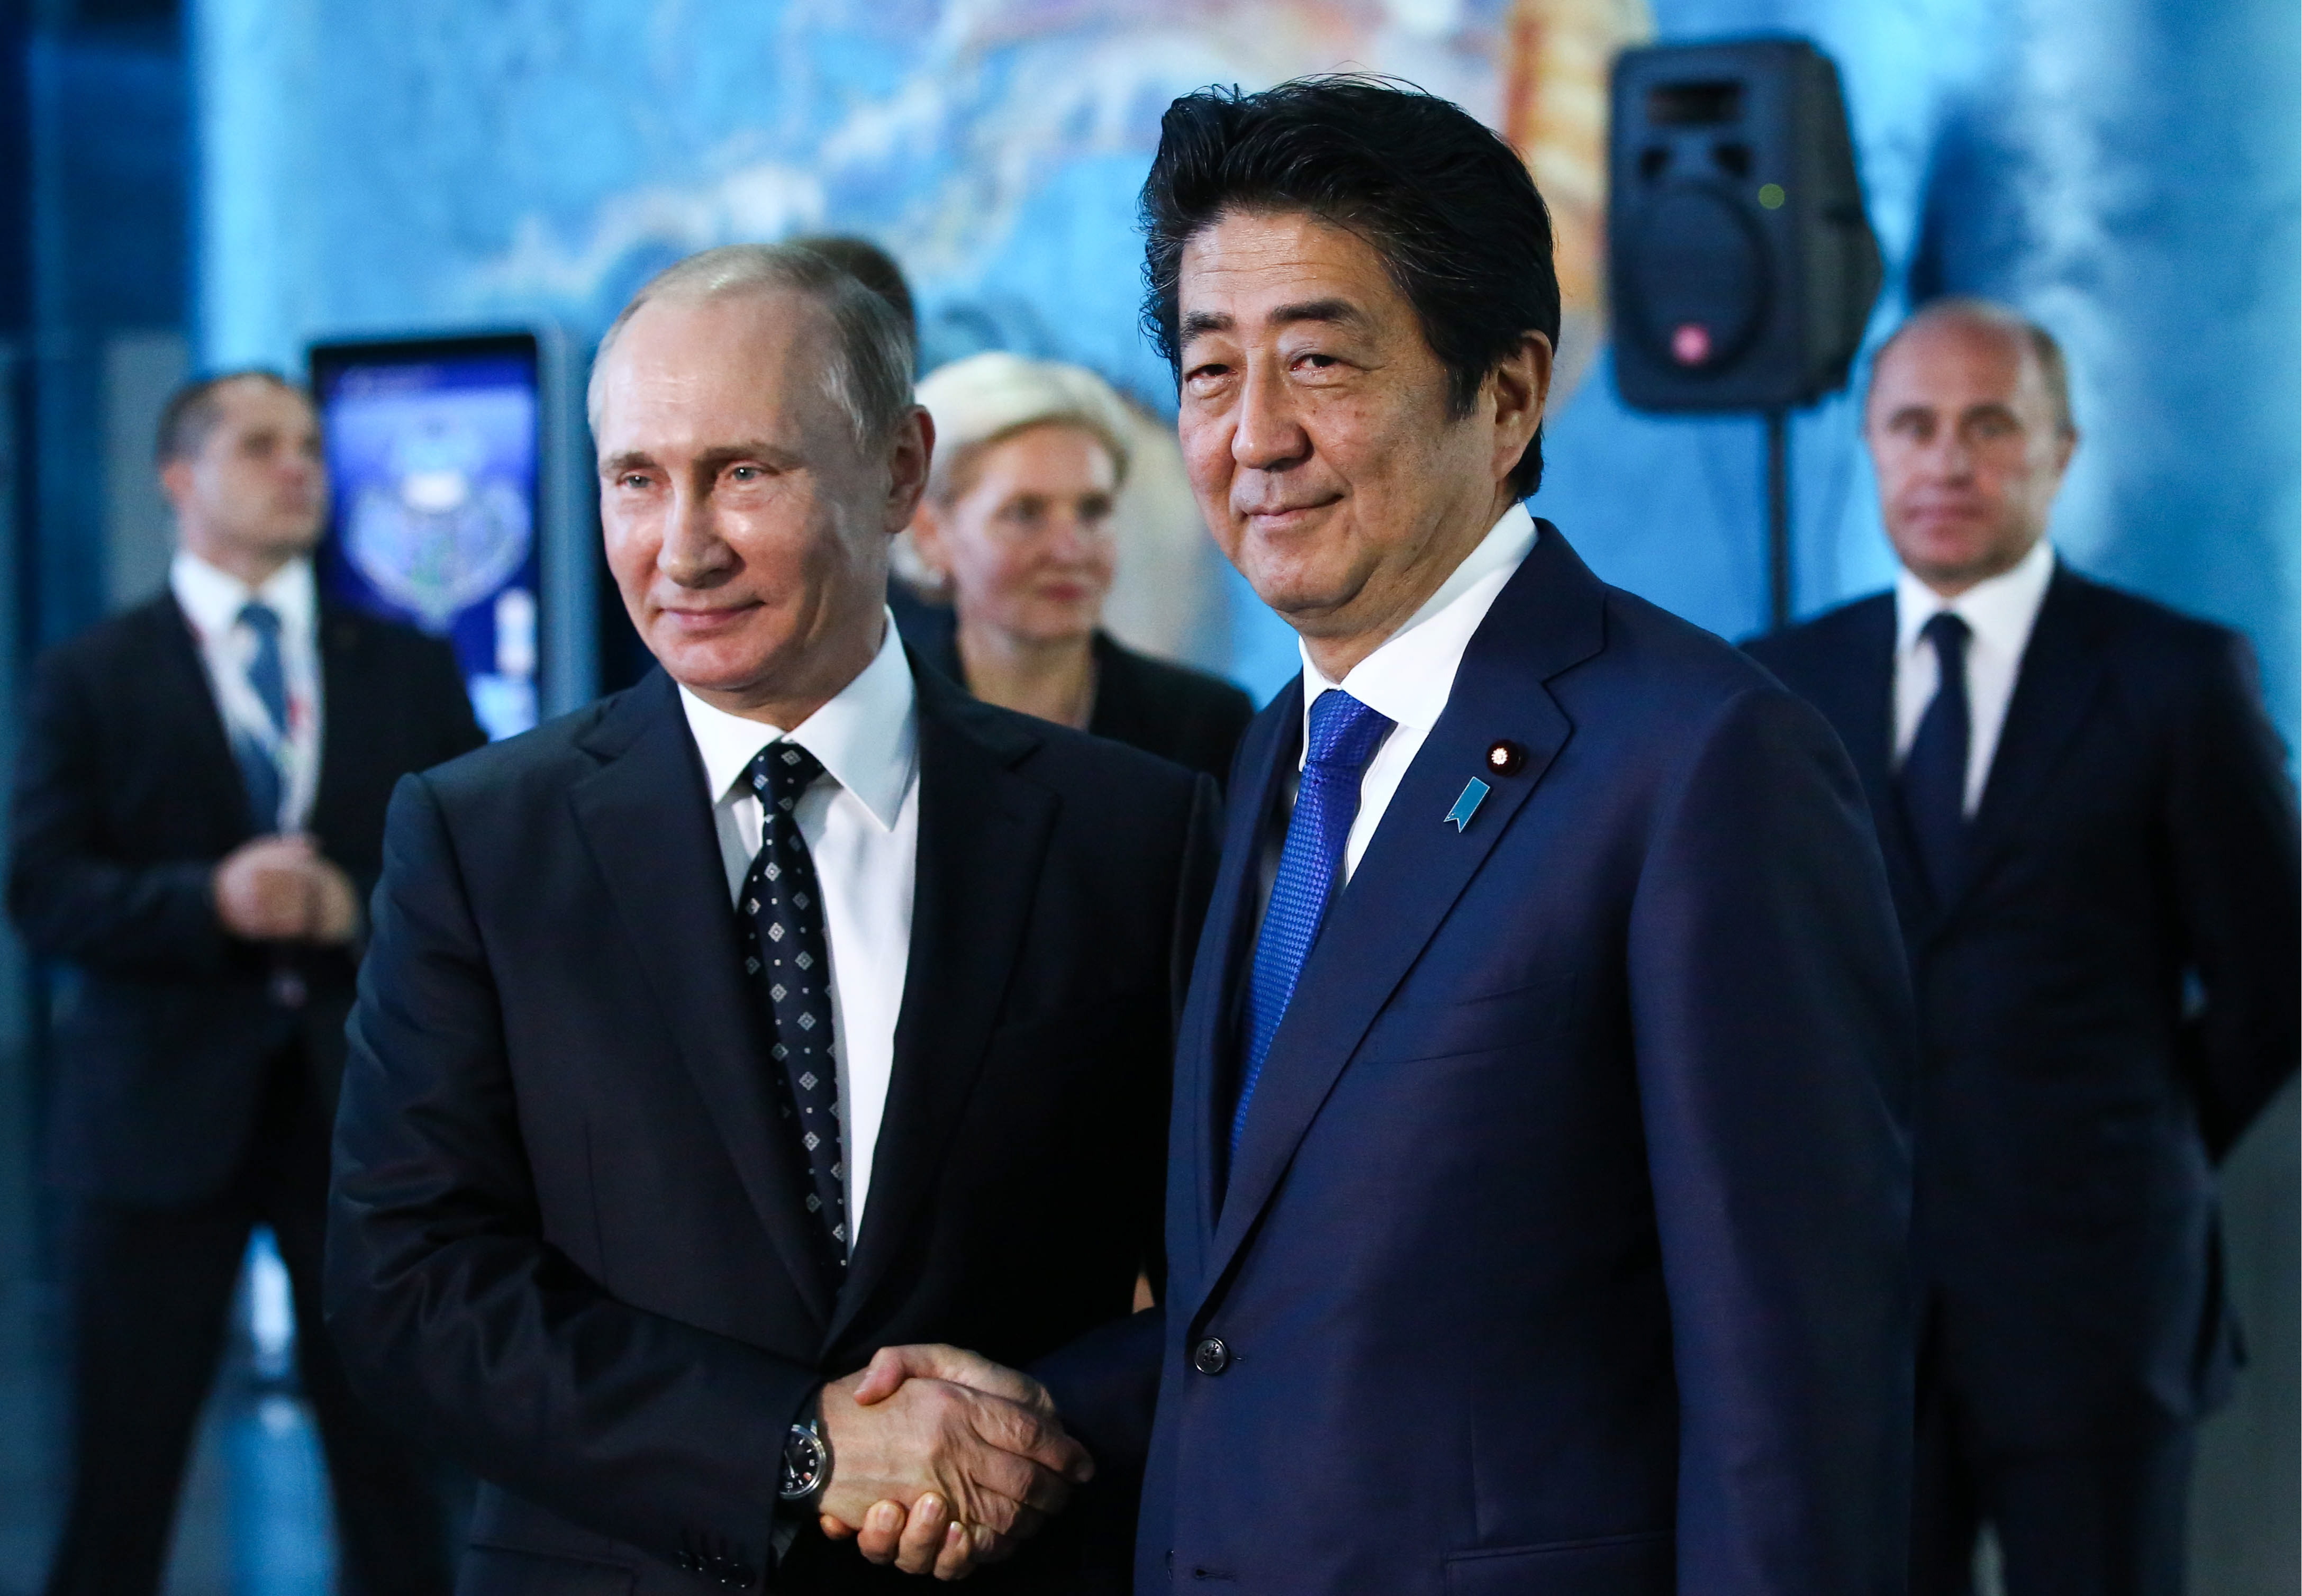 Јапански премијер Шинзо Абе обратио се руском лидеру Владимиру Путину са историјским говором.